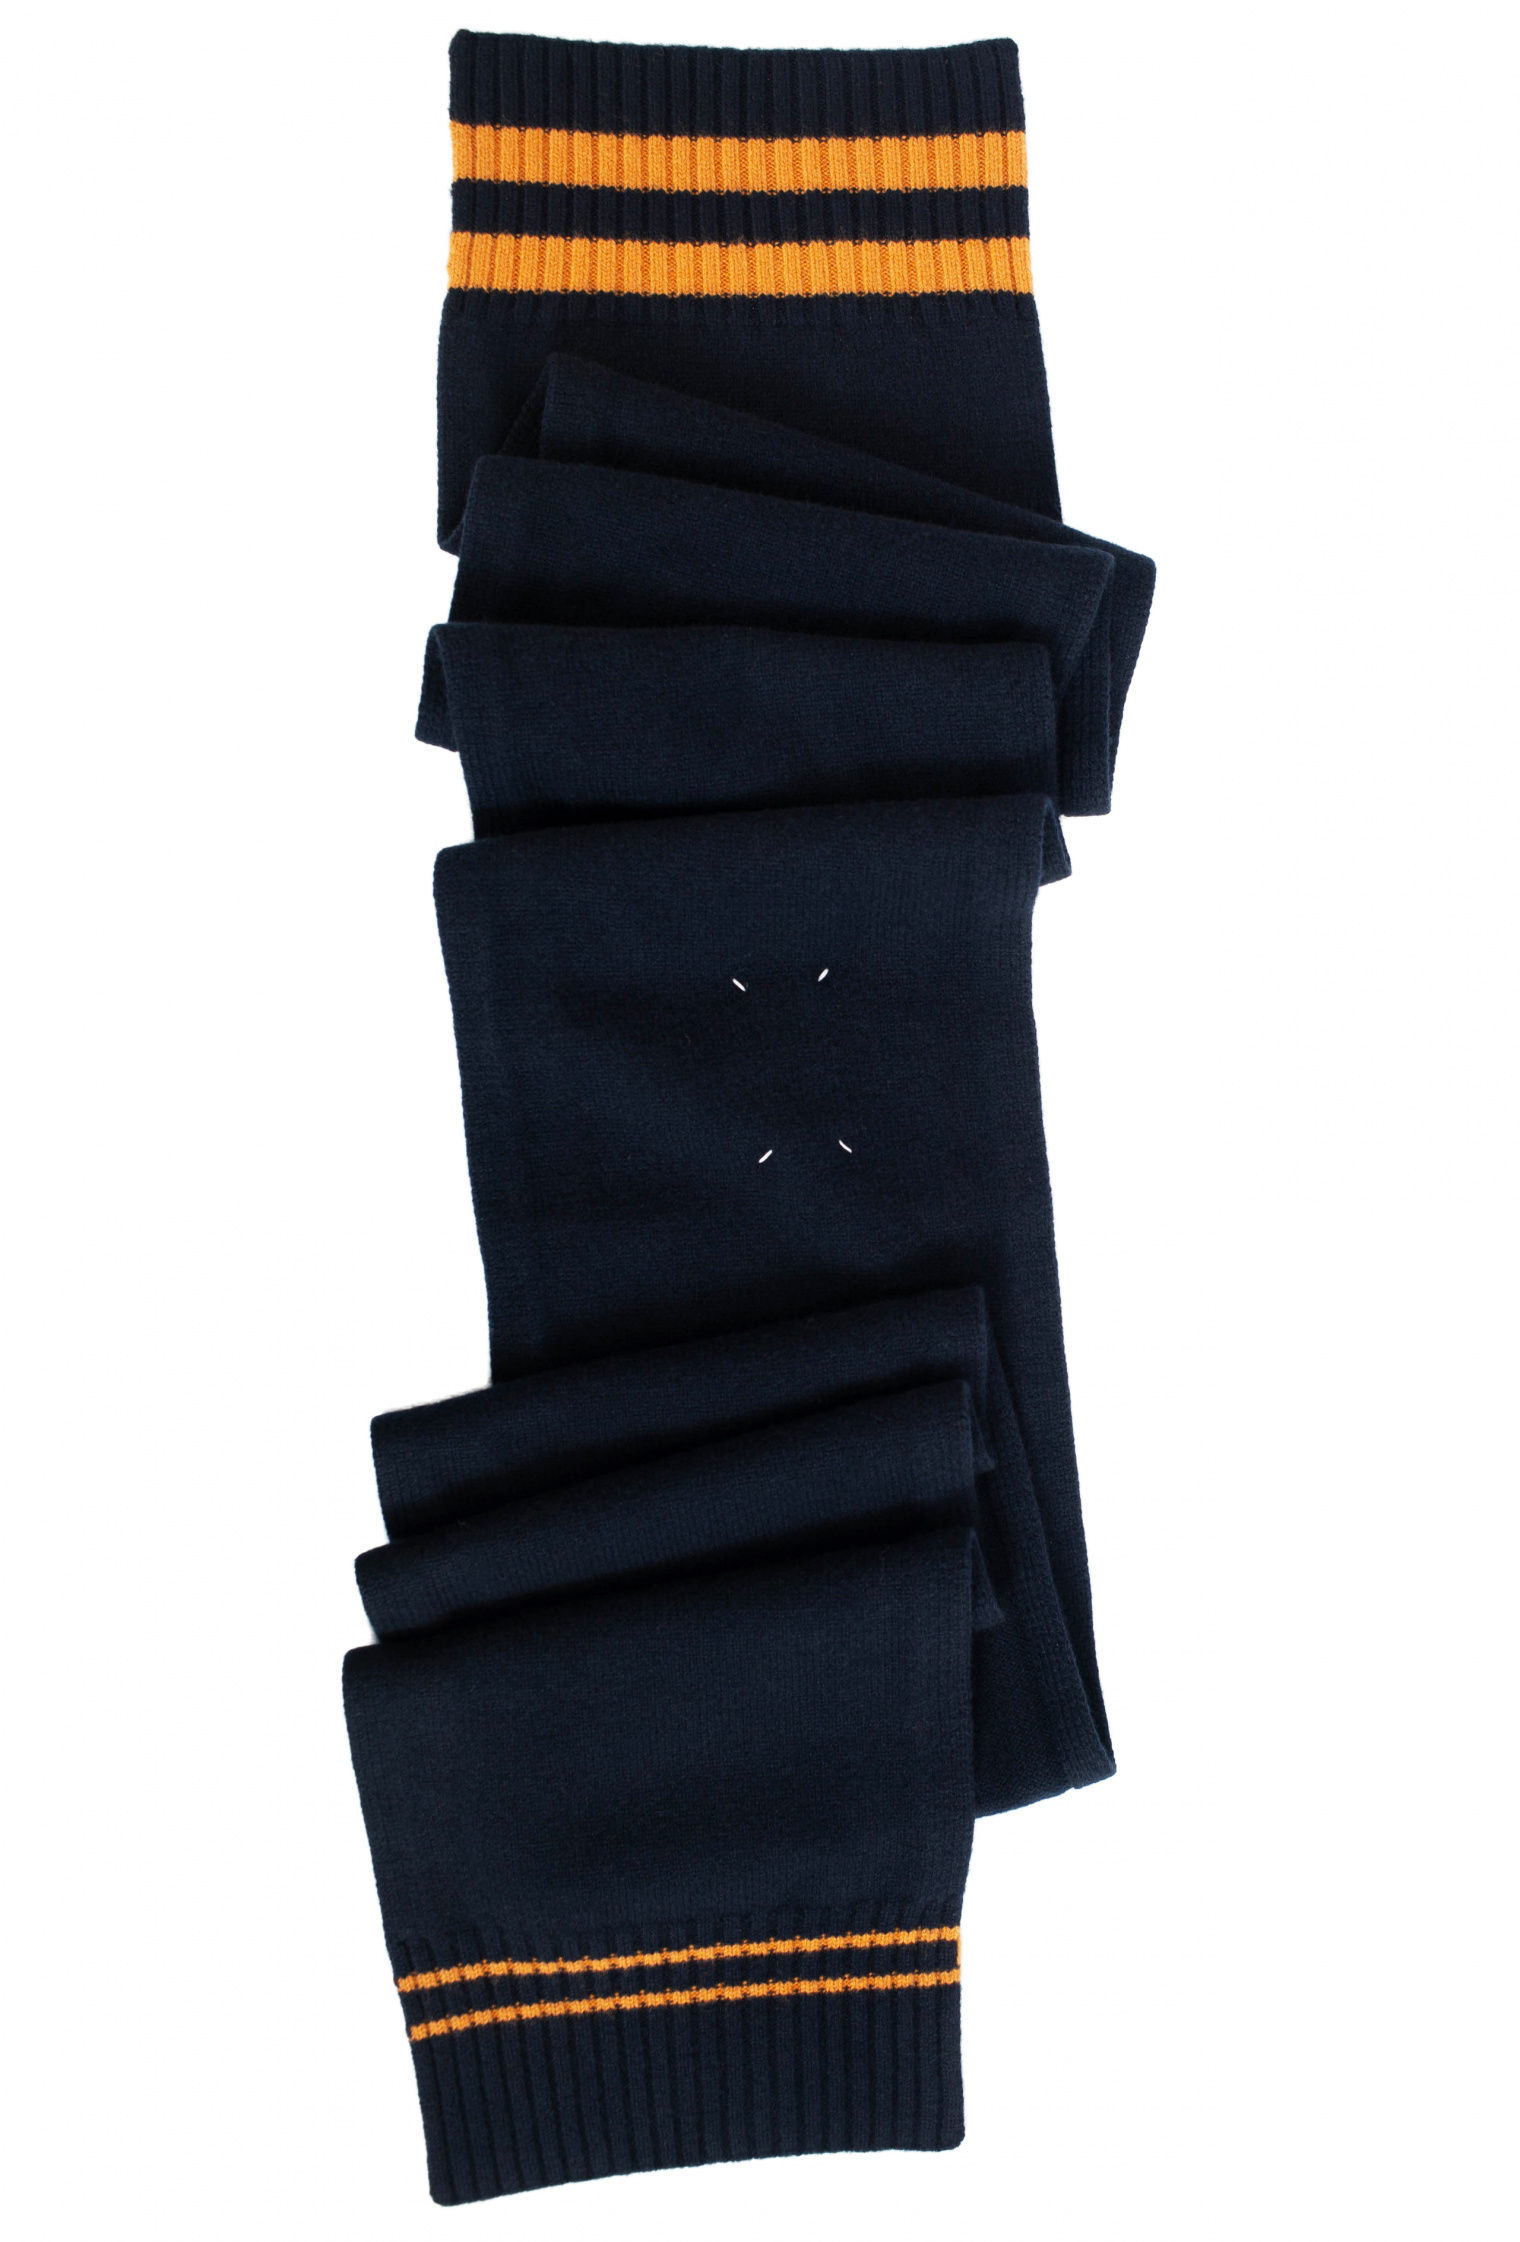 Maison Margiela Синий шарф с контрастными полосками